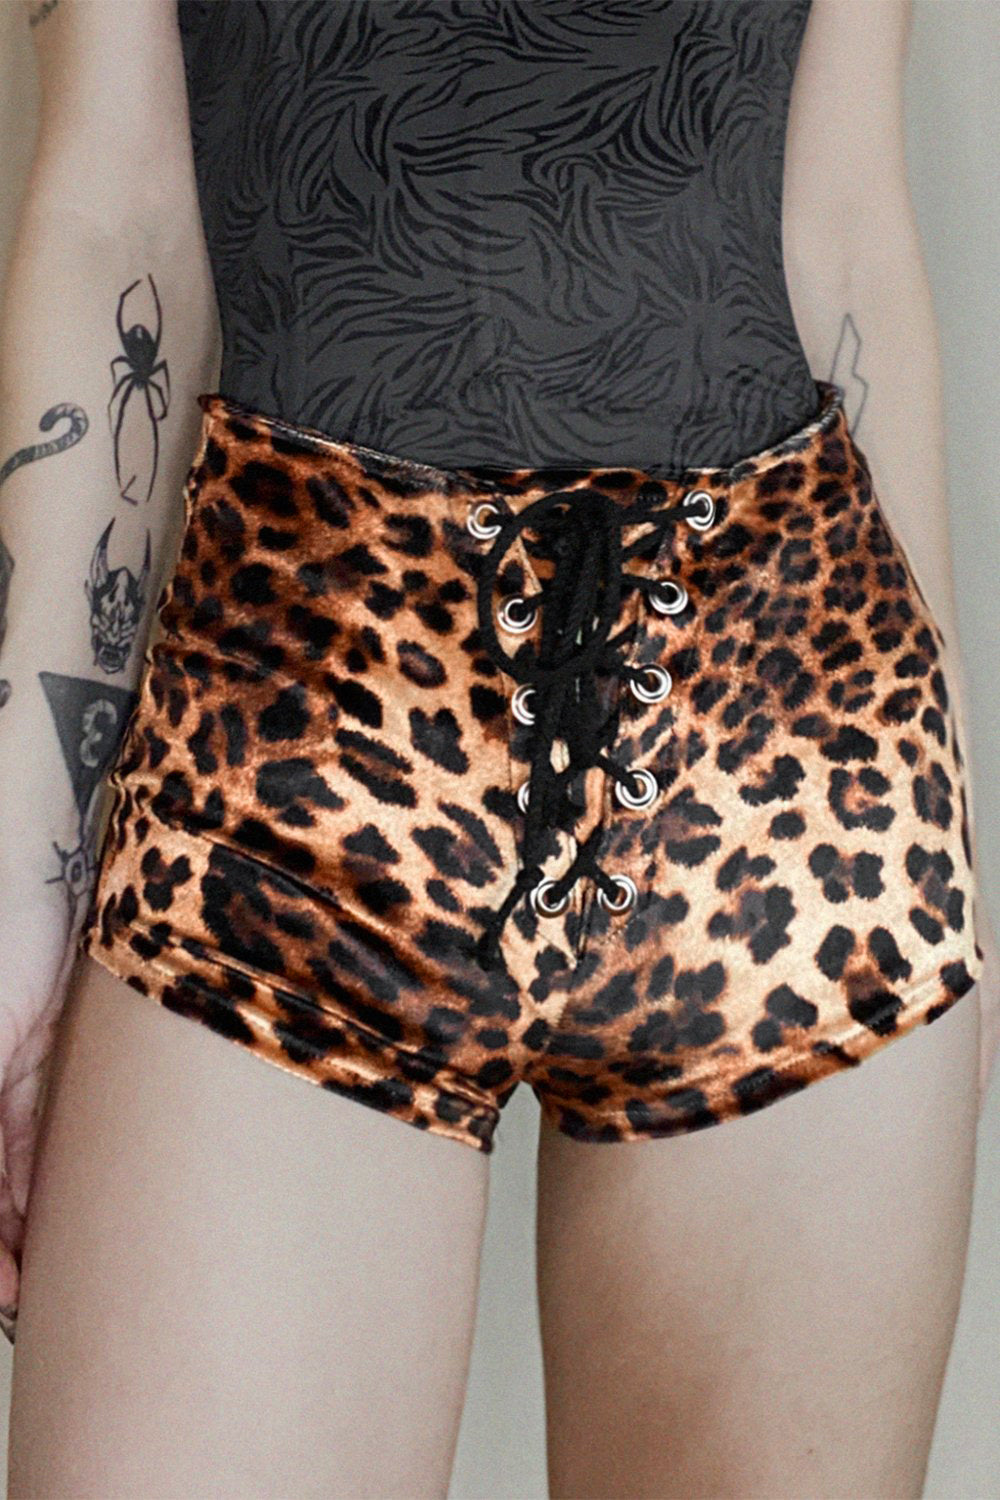 Leopard Velvet Grommet Shorts | Made To Order